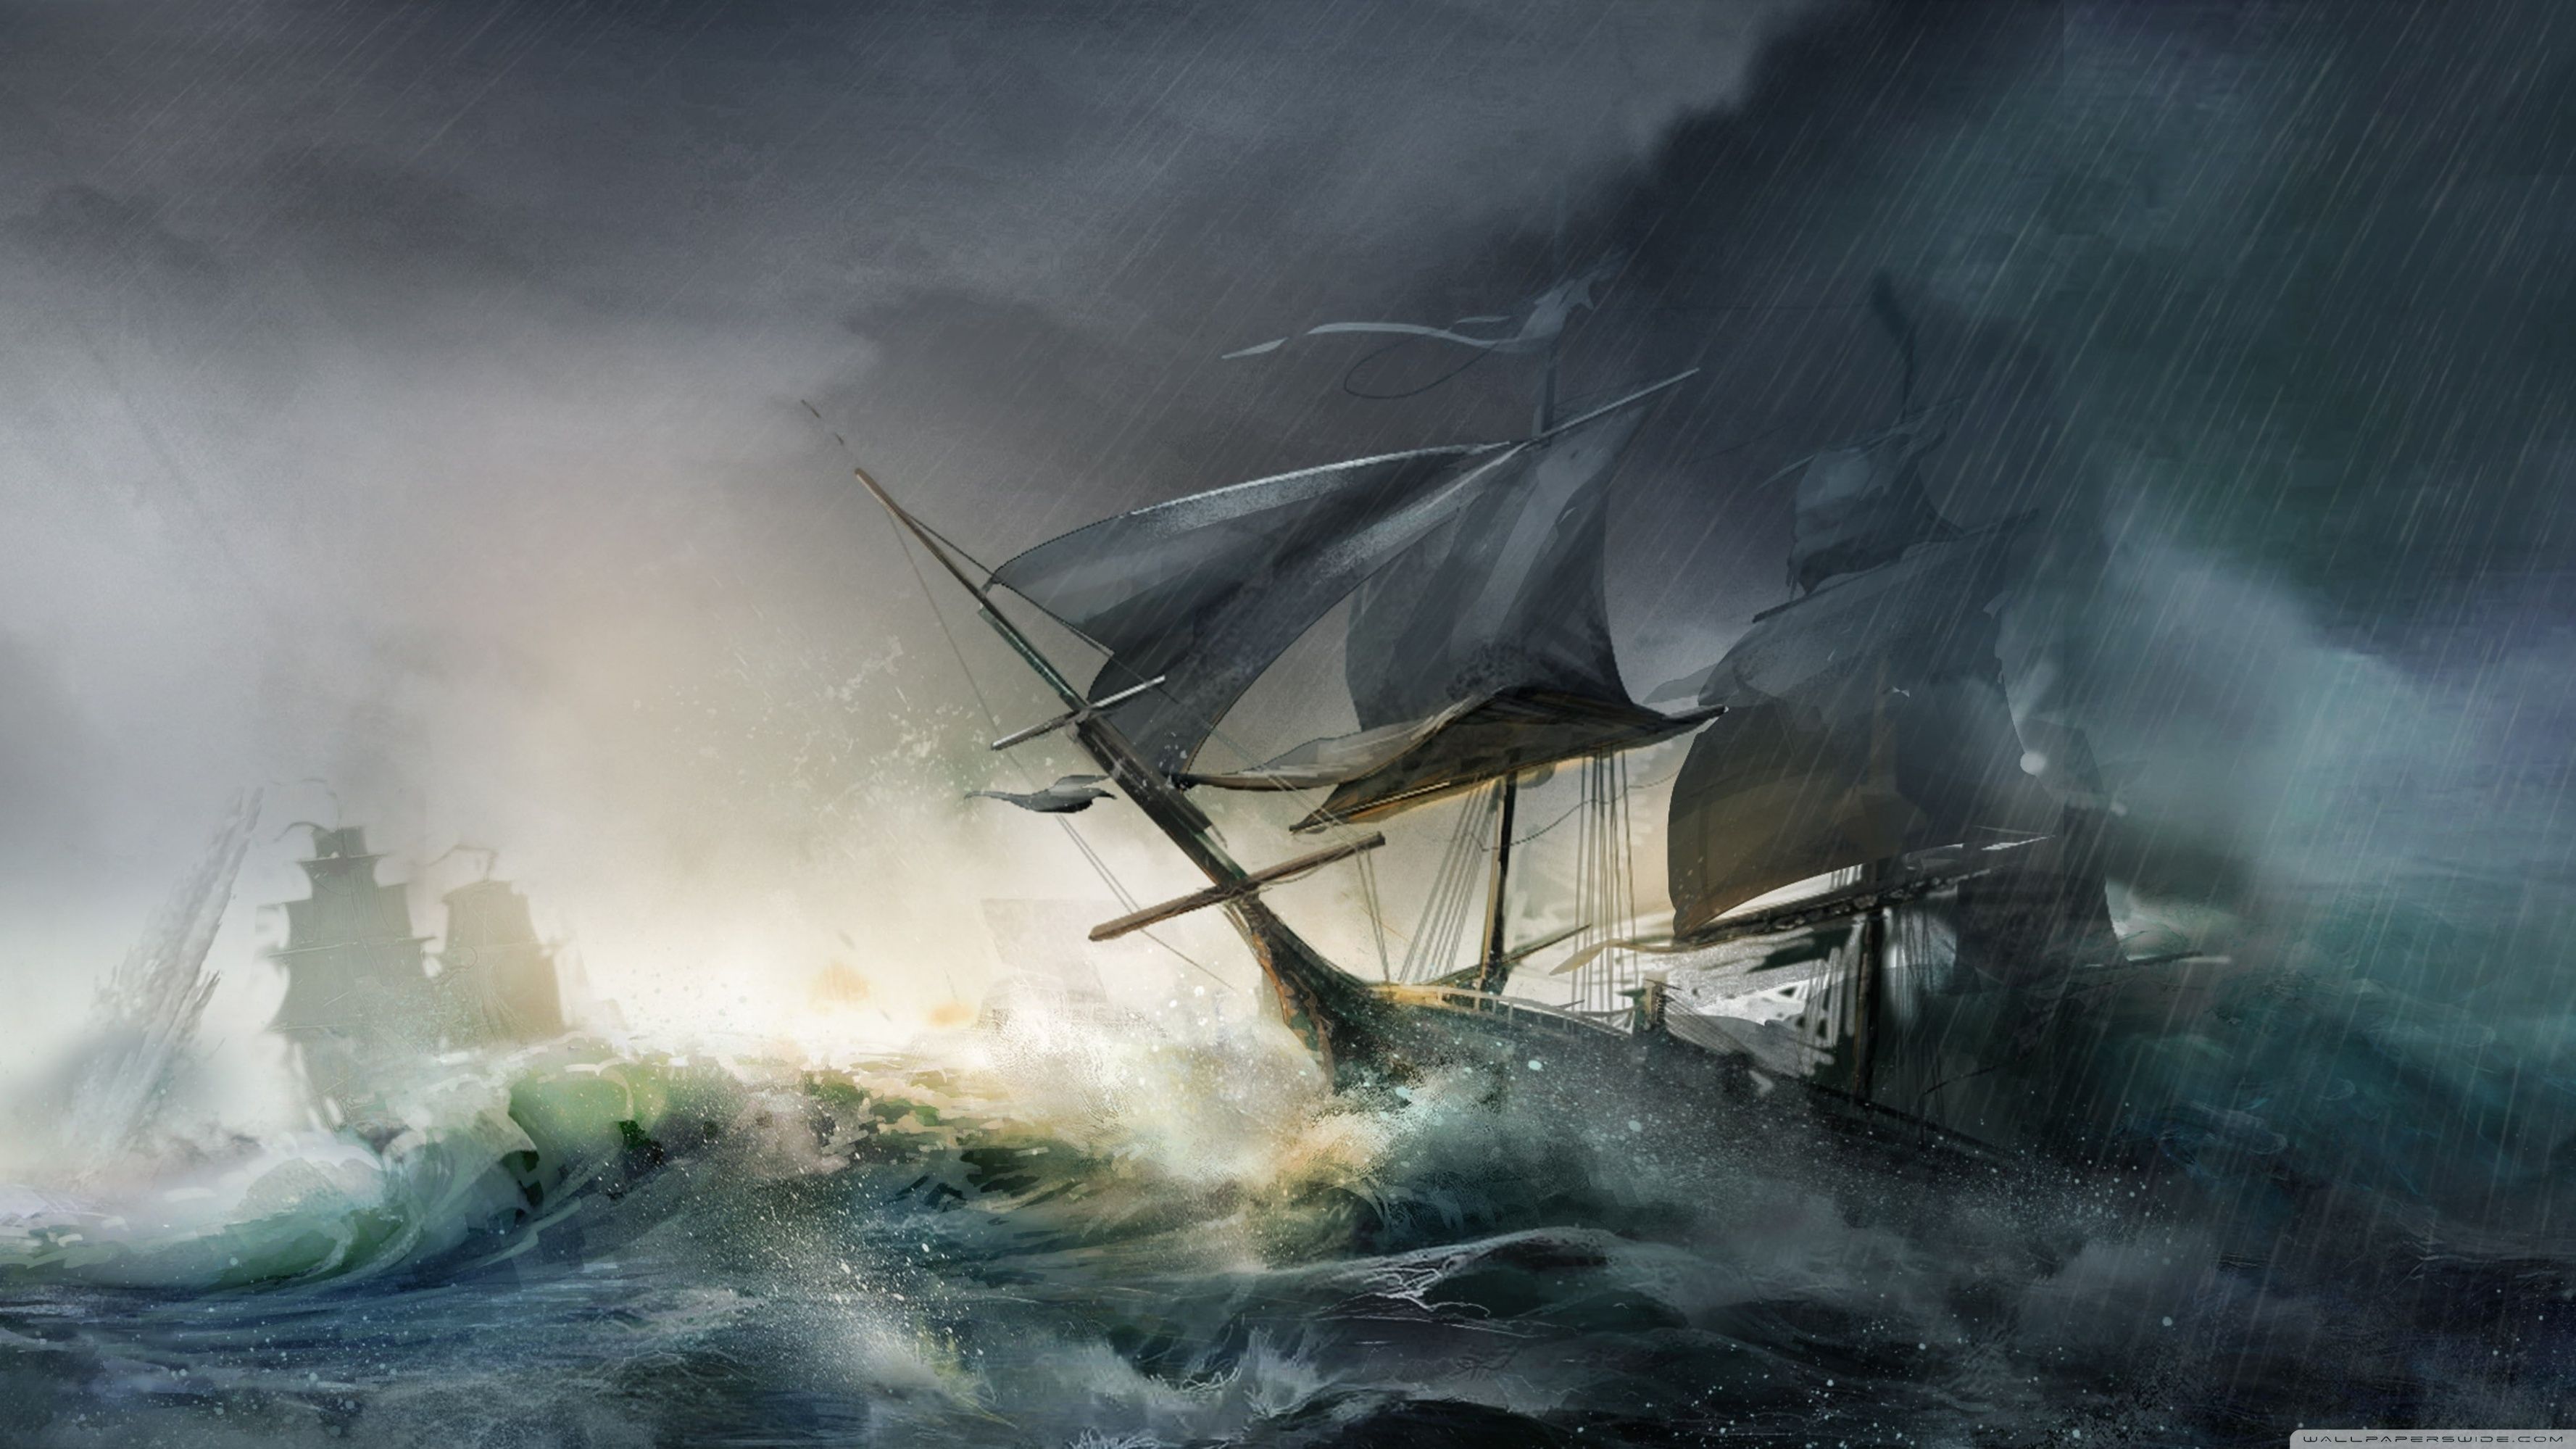 نقاشی تحسین برانگیز از کشتی در طوفان با هاله رنگی خاکستری 